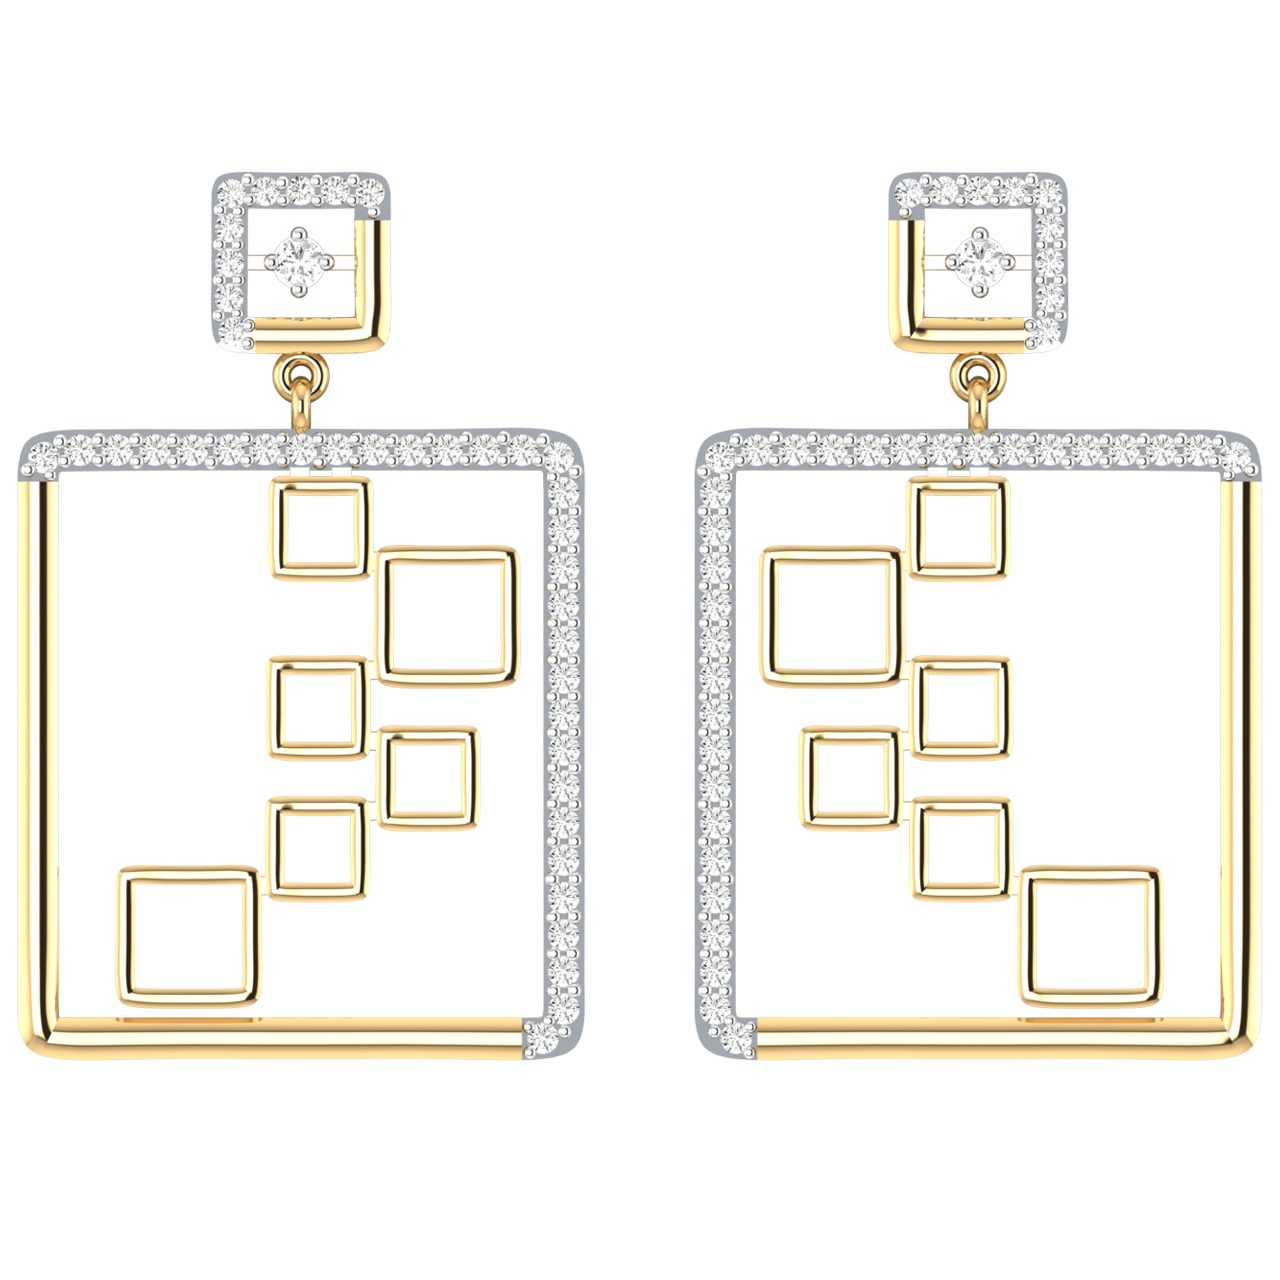 Stylish Inter-Square Diamond Dangler Earrings